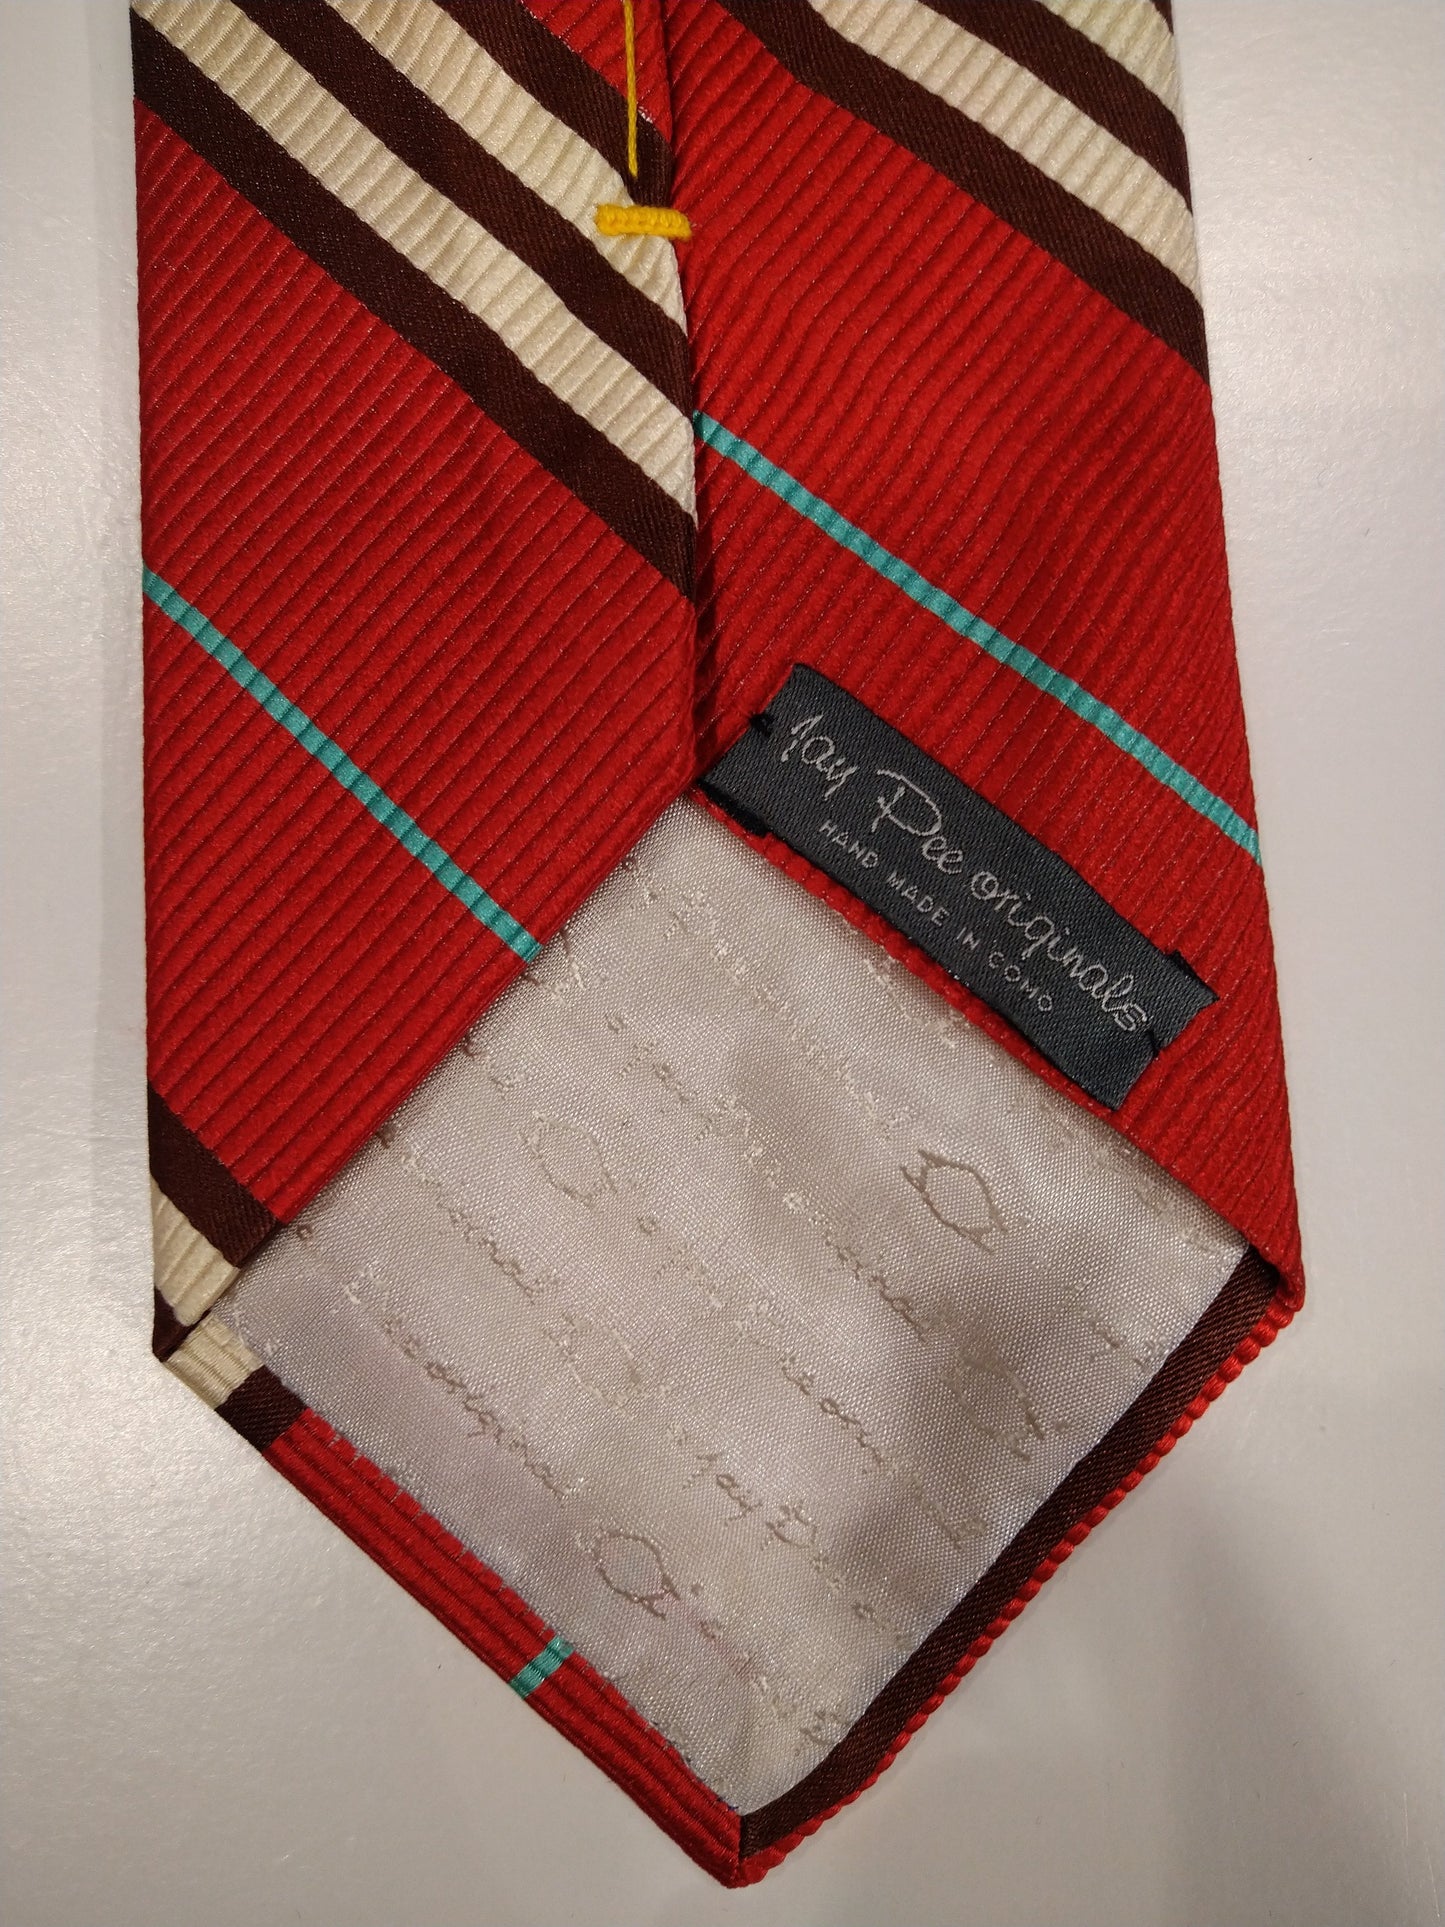 Jay Pee Original hand made in Como zijde stropdas. Rood / bruin / wit / blauw gestreept.